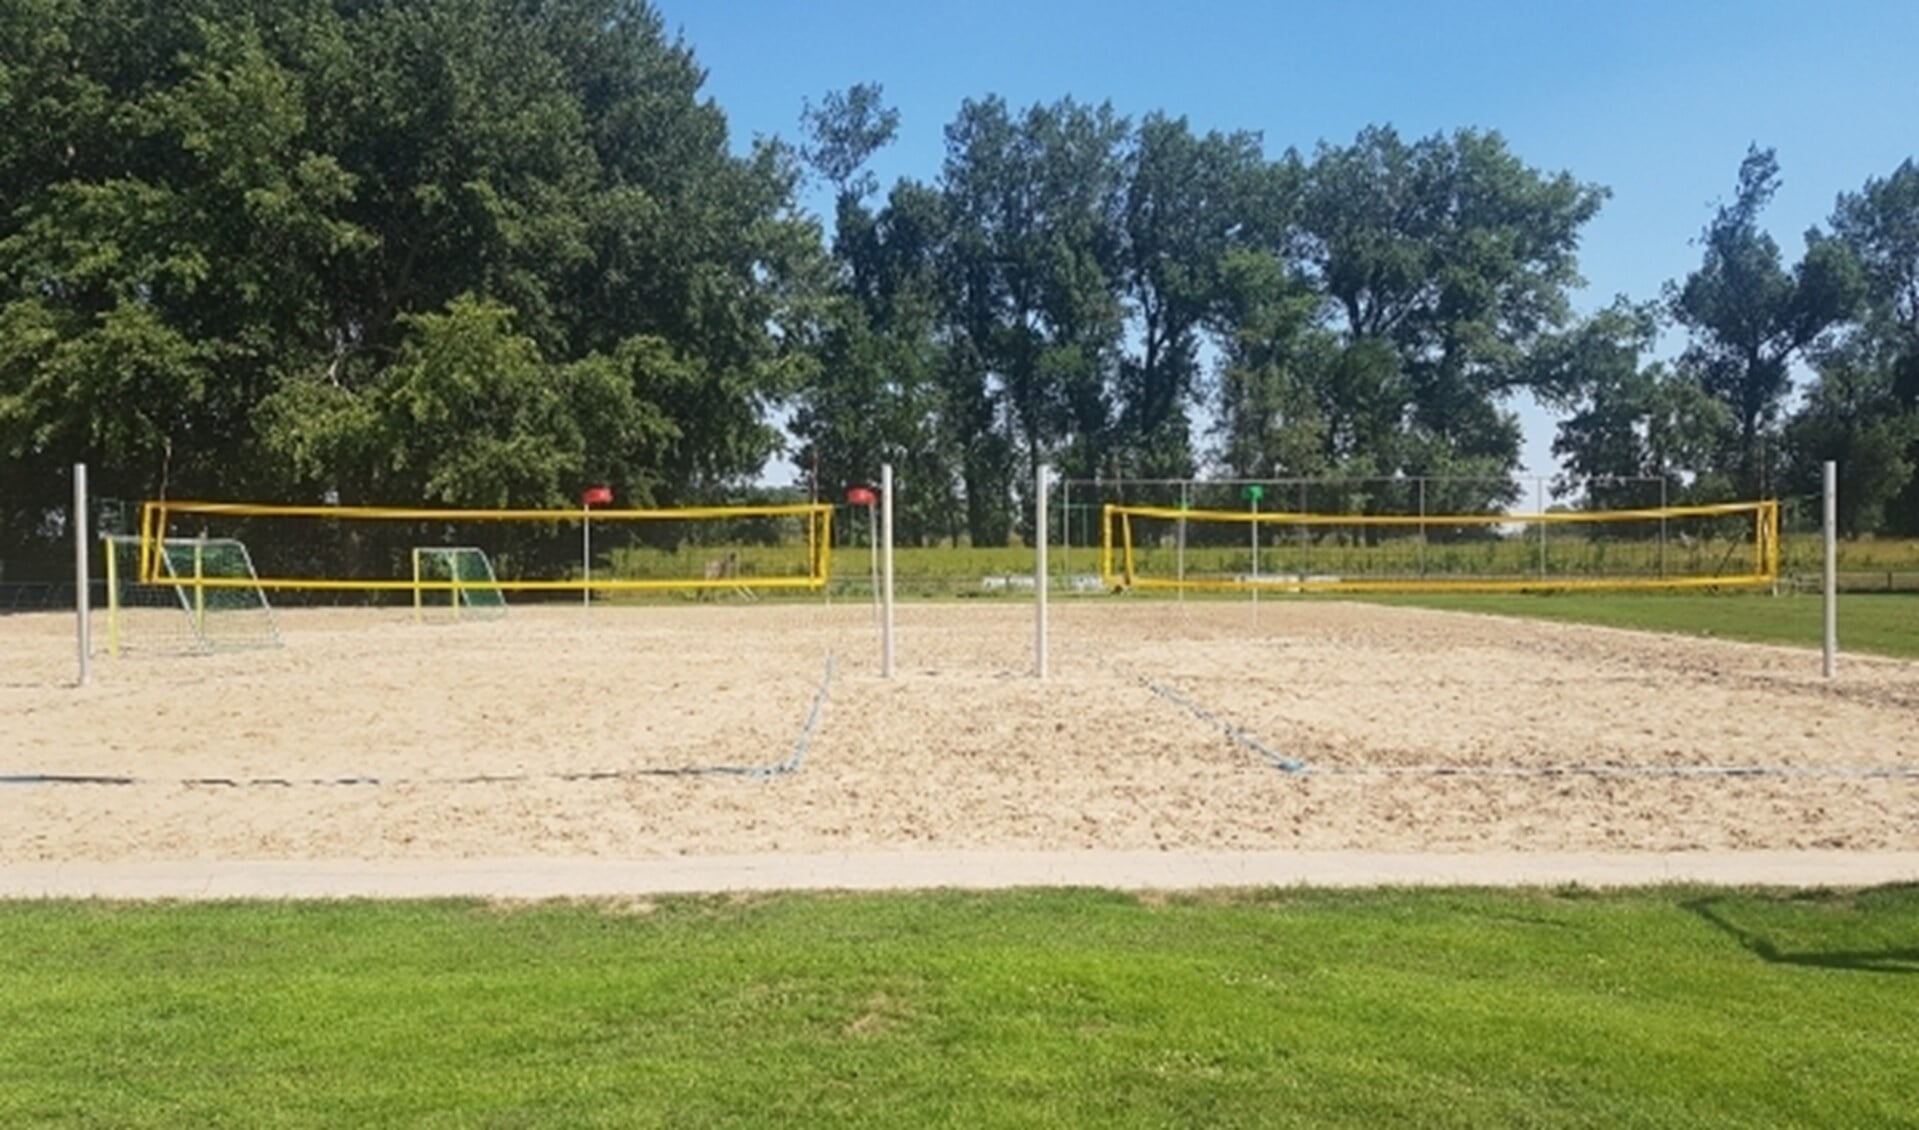 Beachvolleybal weer mogelijk op Beachcourt sportcomplex Botreep